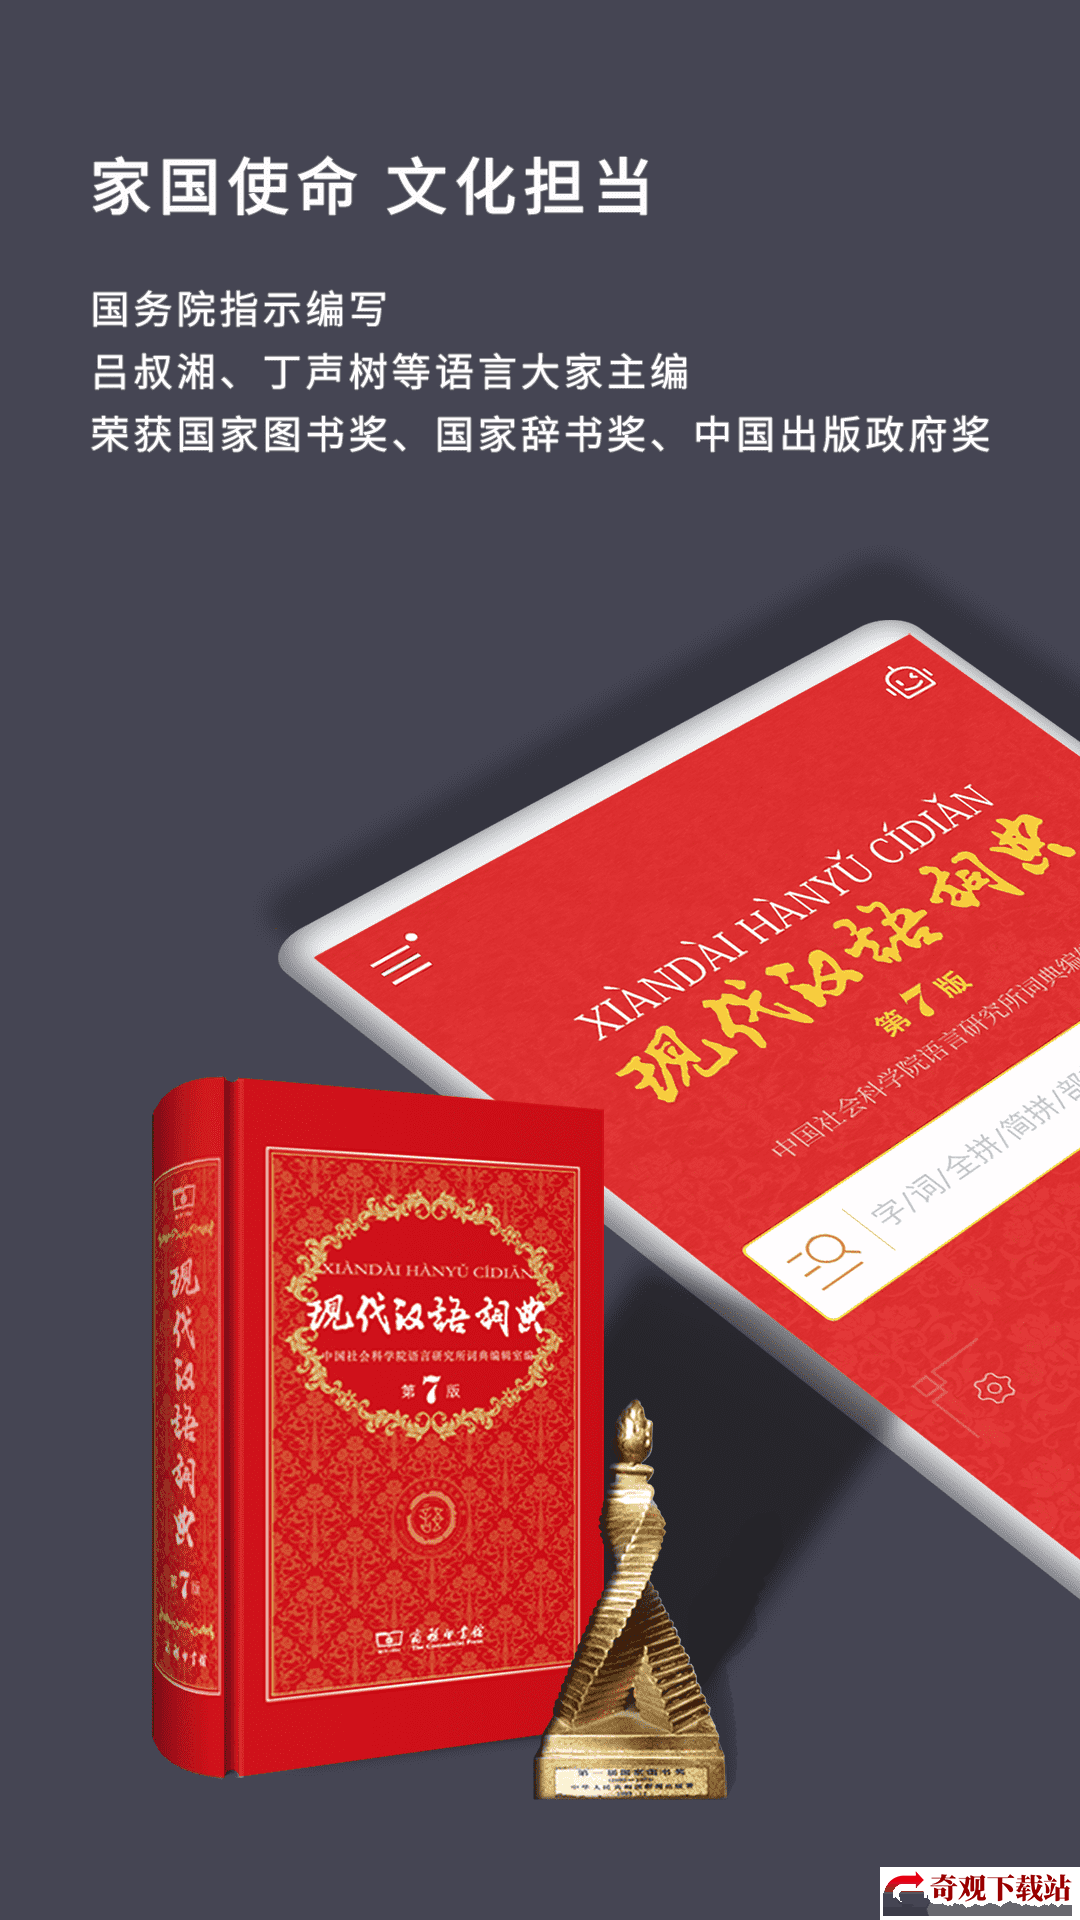 现代汉语词典电子版,现代汉语词典电子版免费